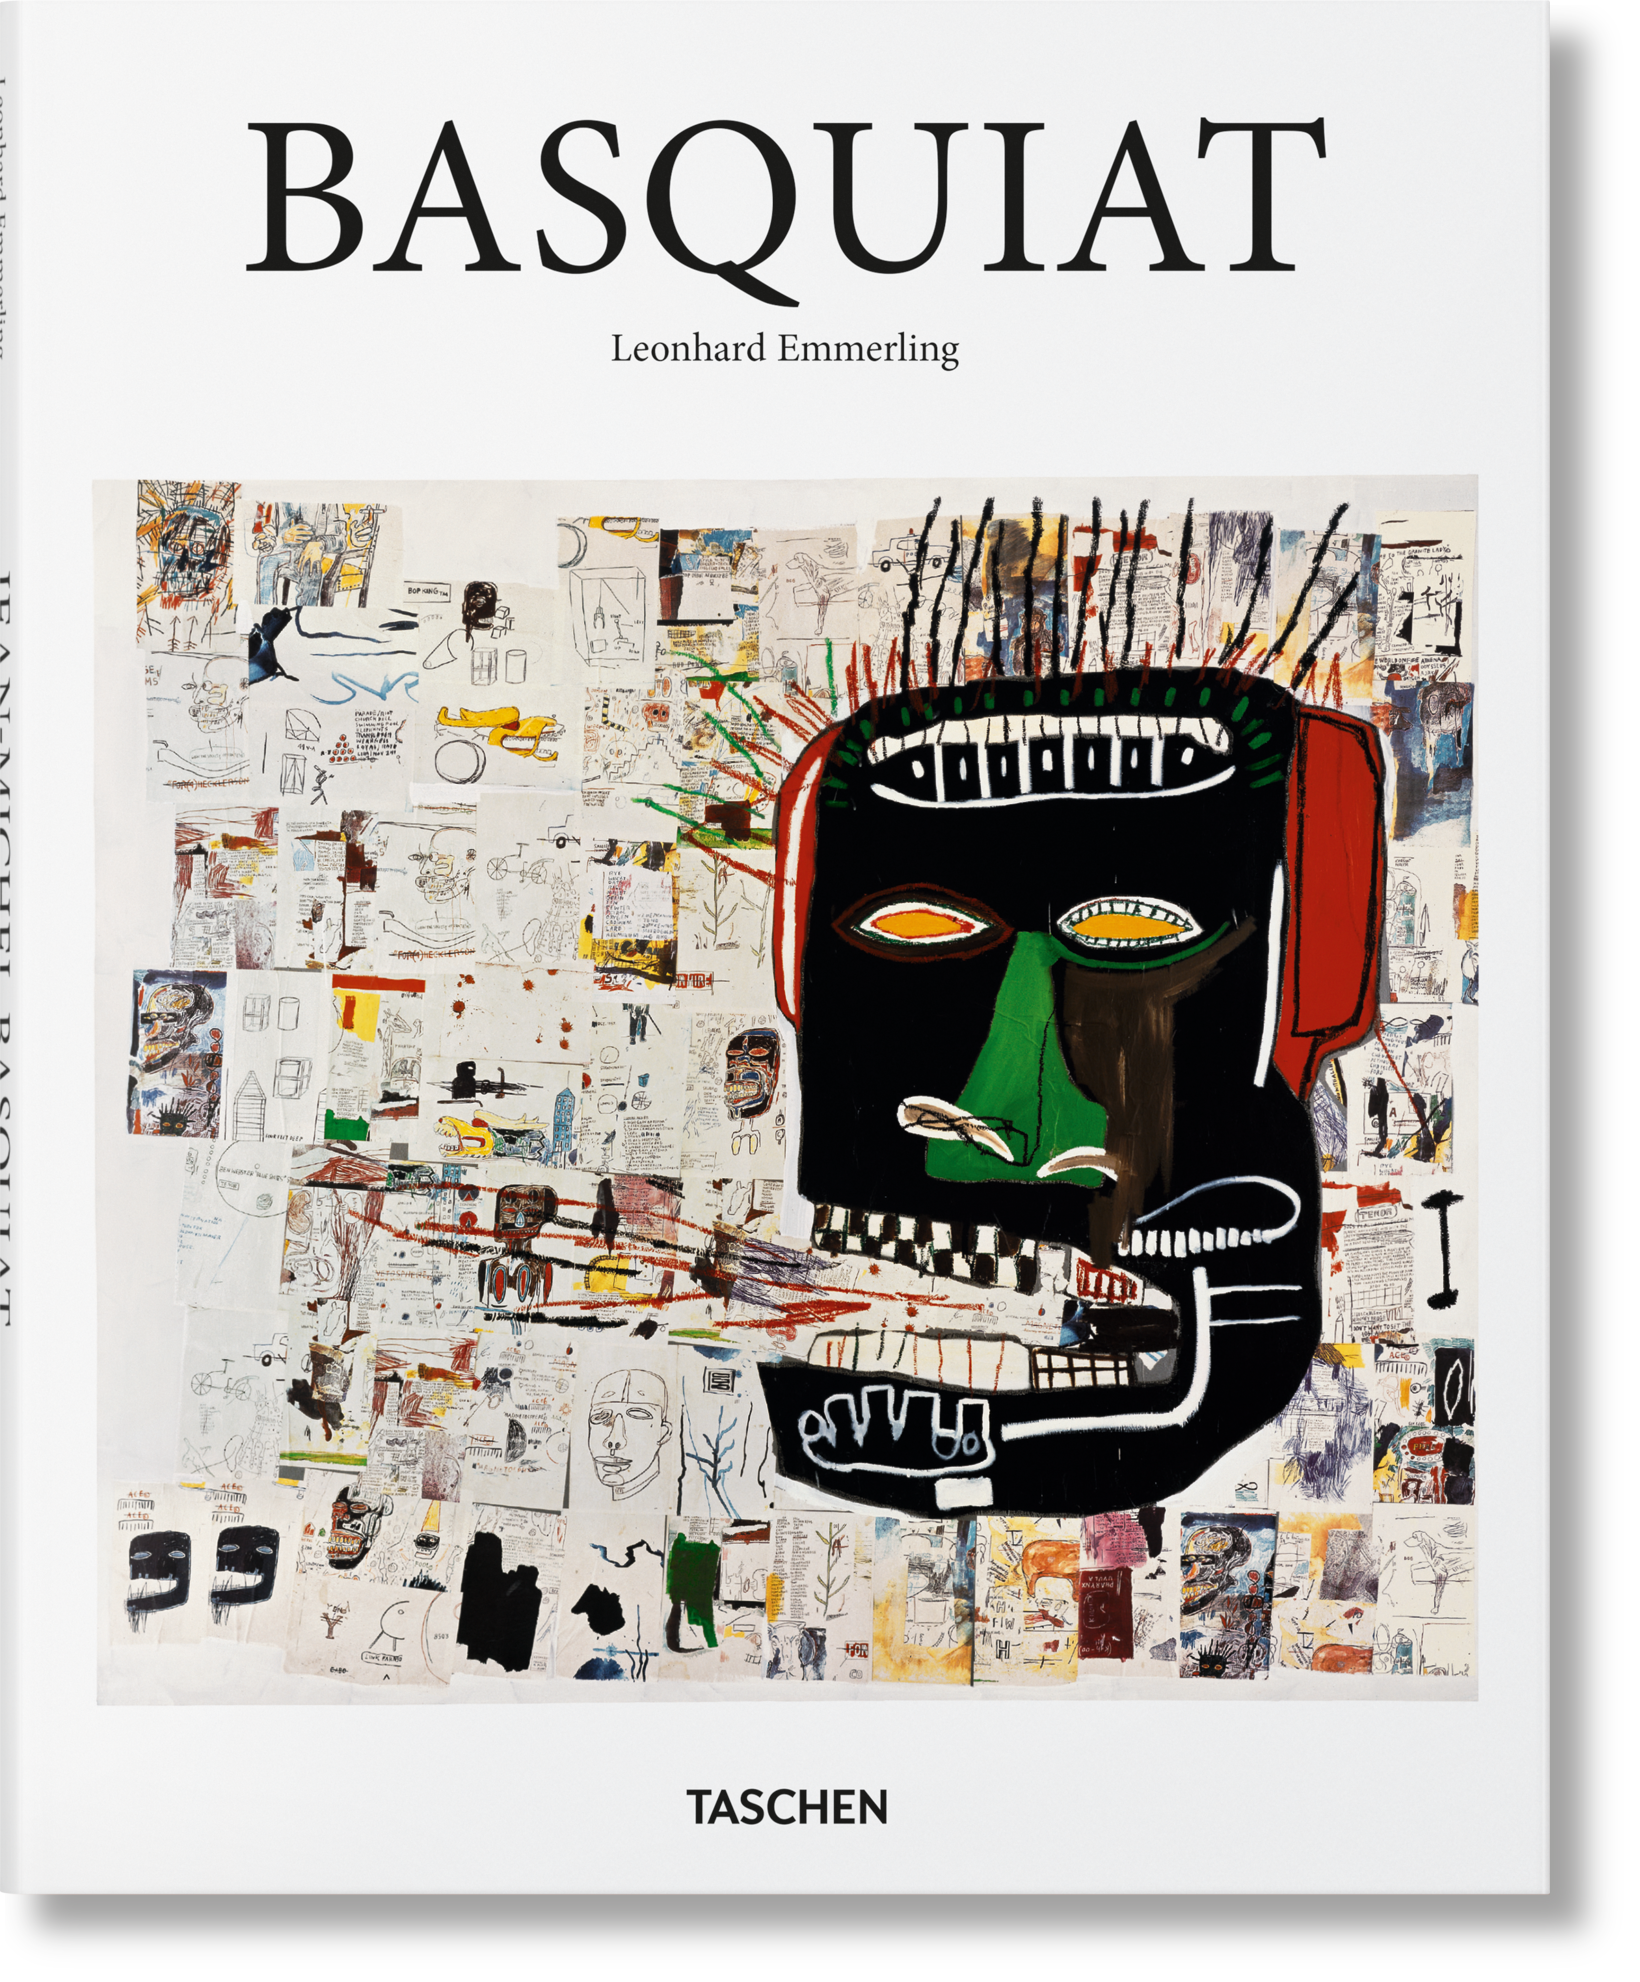 Jean-Michel Basquiat by Leonhard Emmerling - Taschen Basic Art